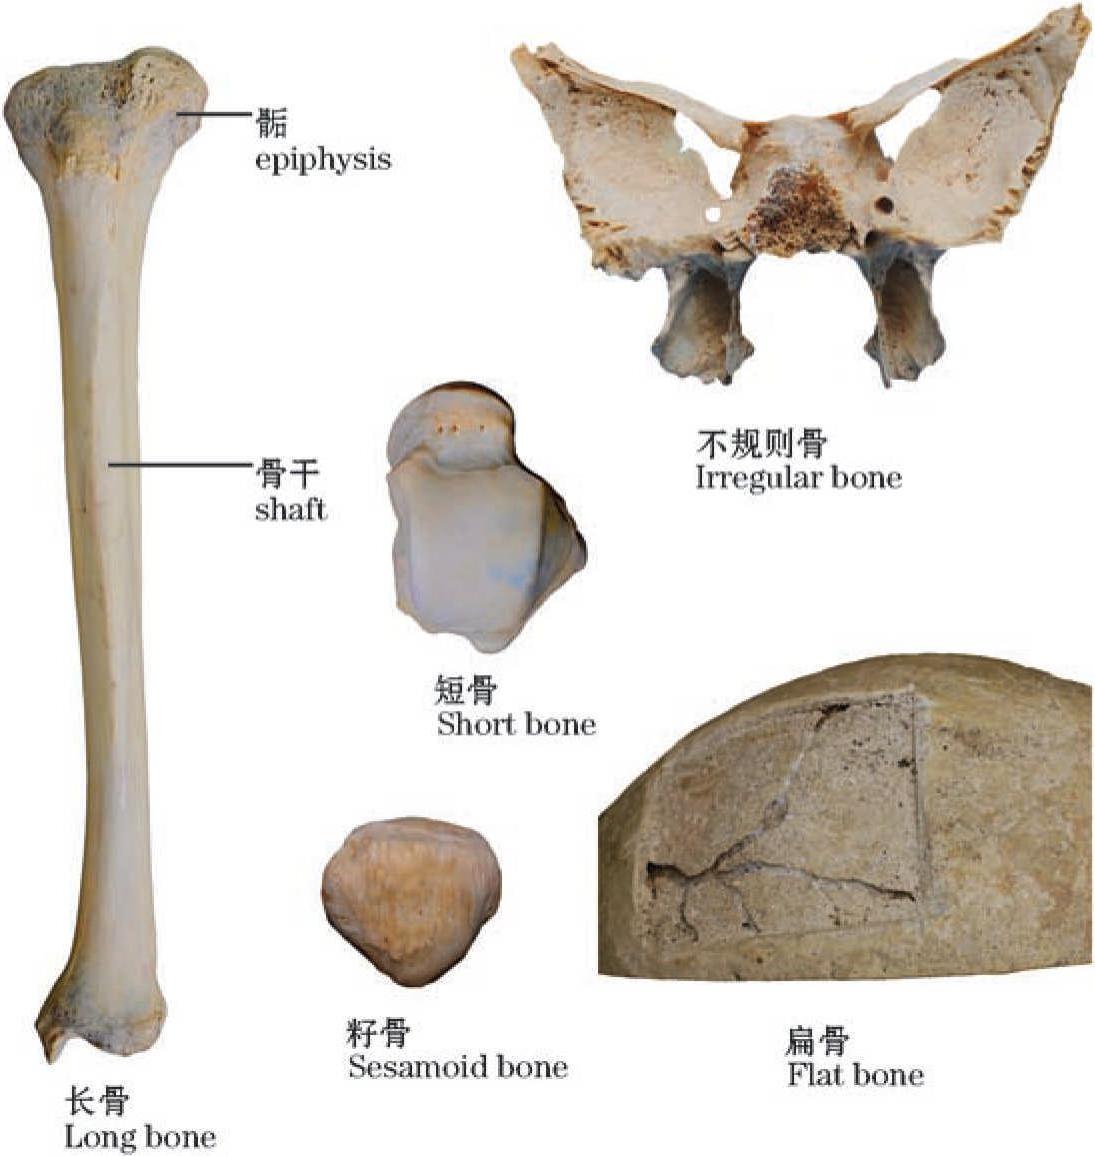 图1-3 骨的分类